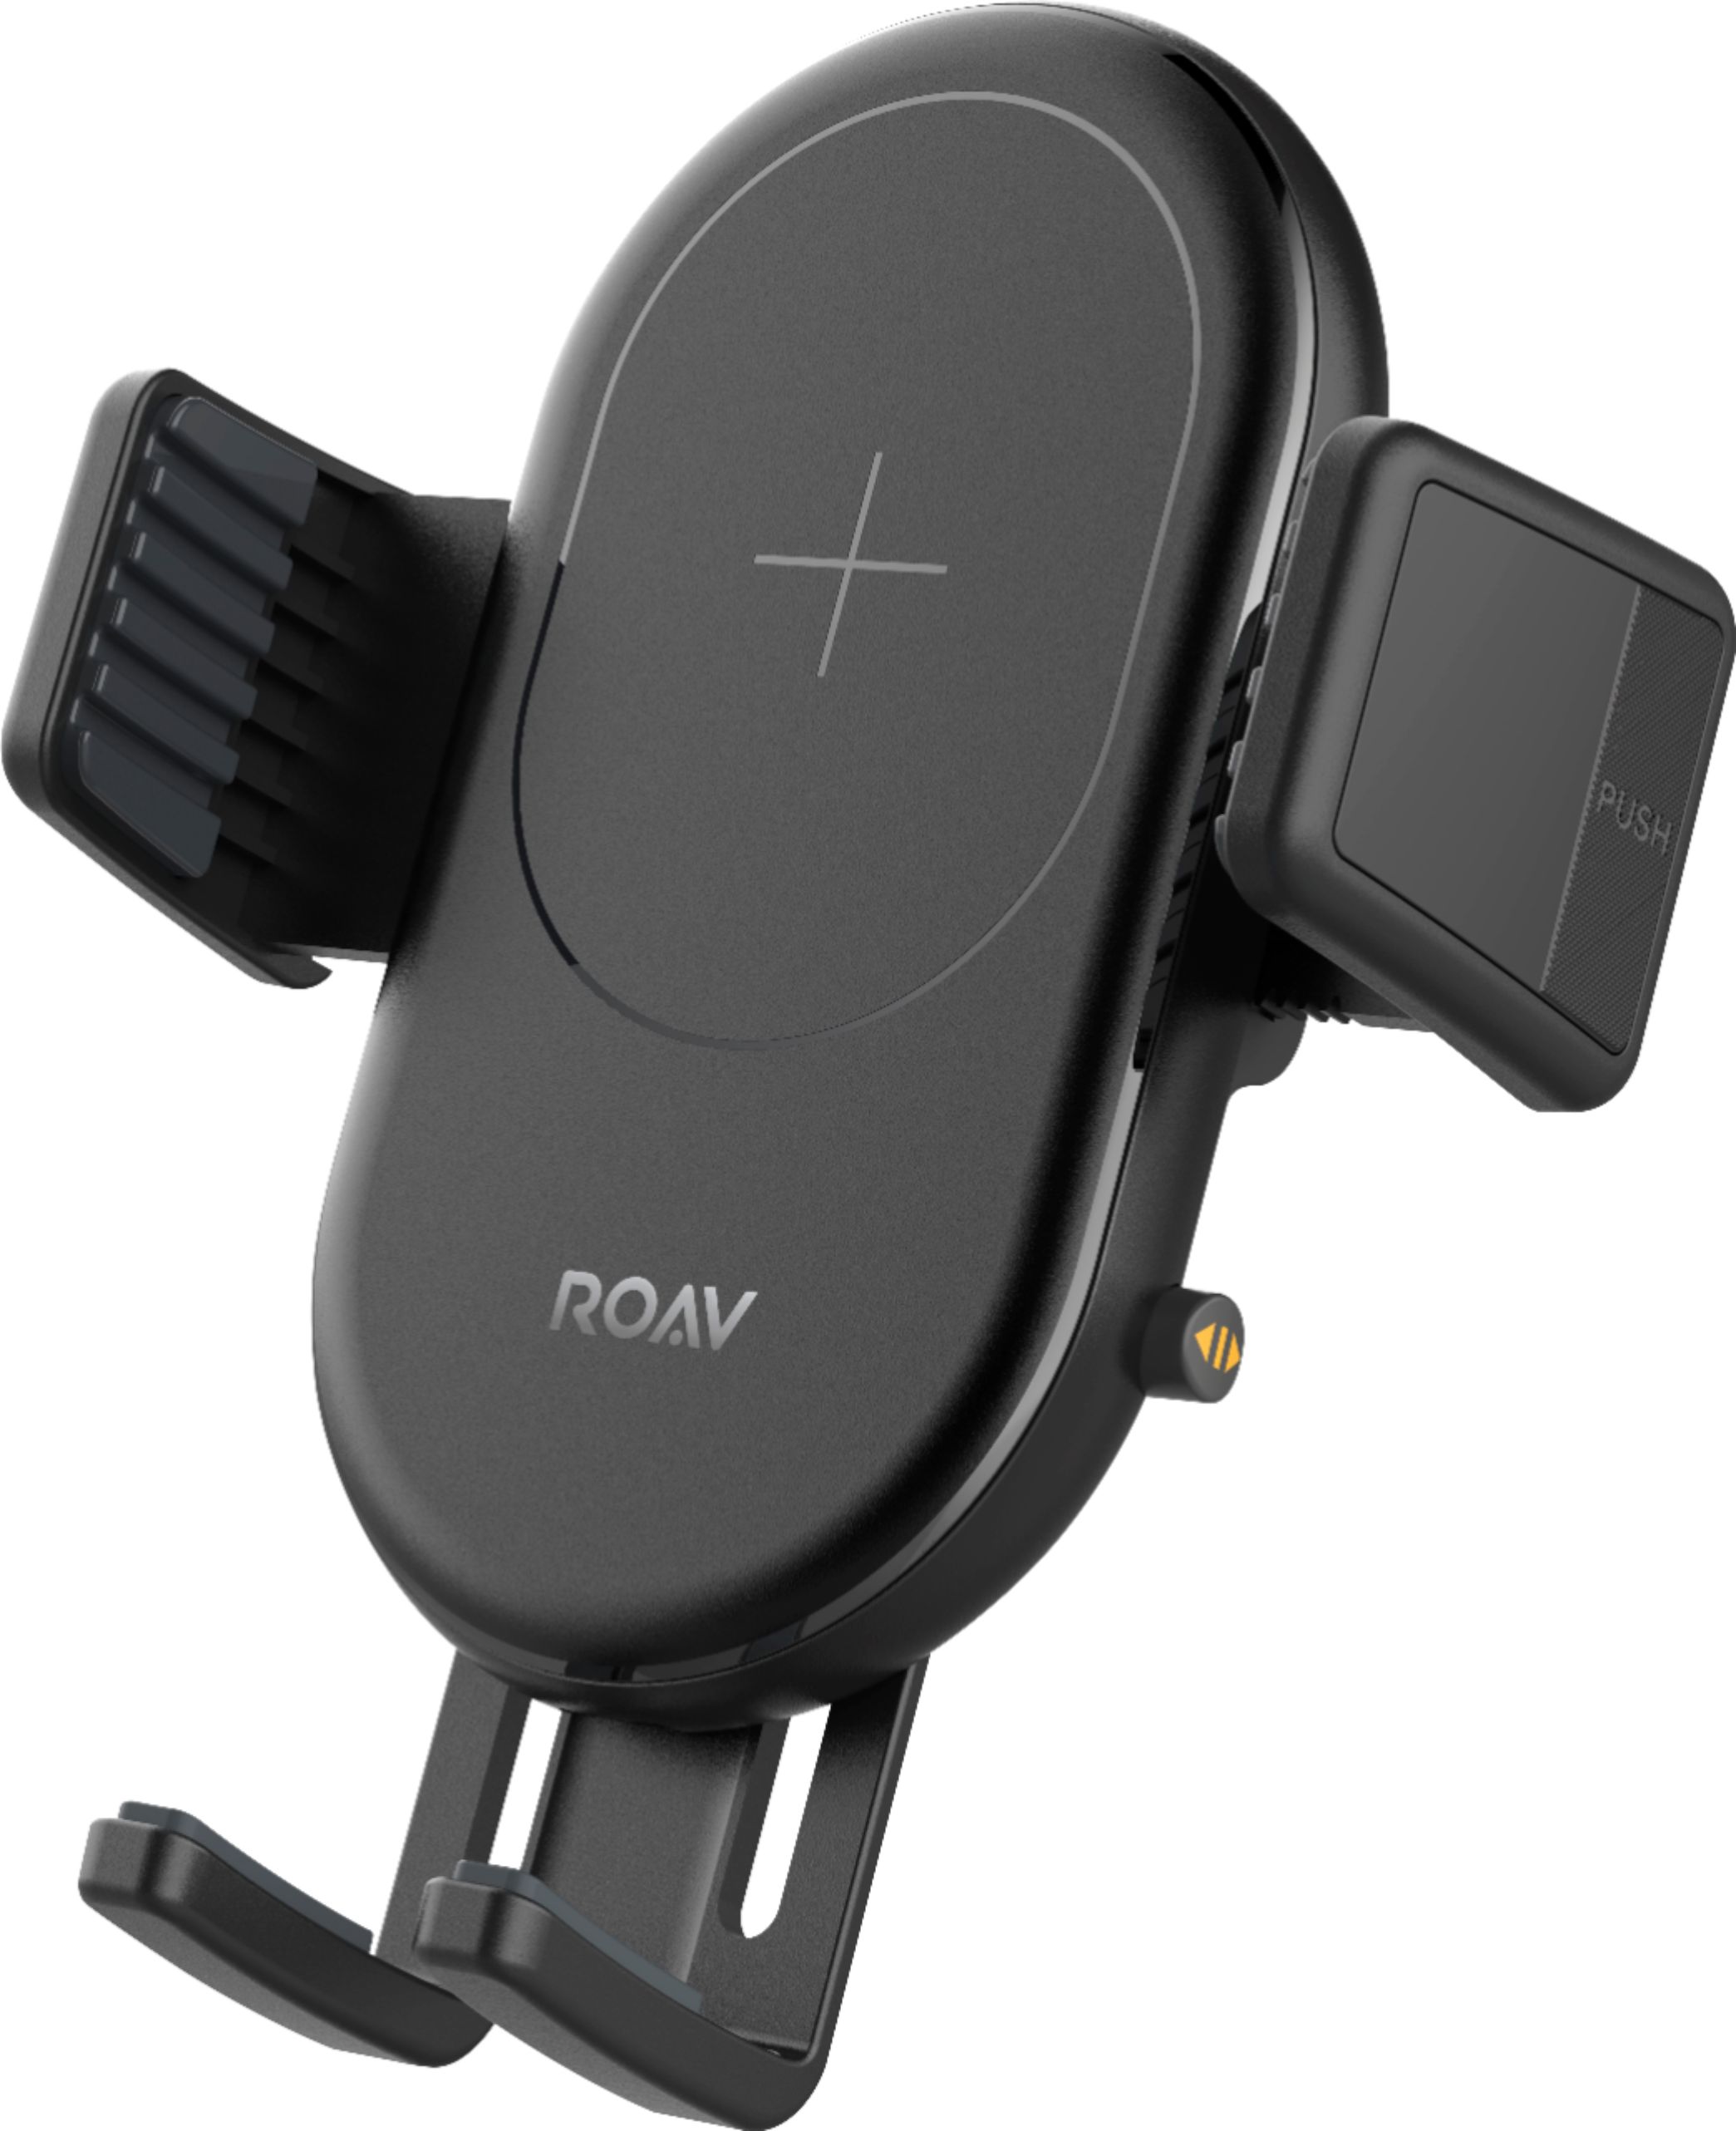 Hervat Verhogen Tegenhanger Best Buy: Anker ROAV PowerWave Vehicle 10W Qi Certified Wireless Charging  Pad for iPhone/Android Black H5210011